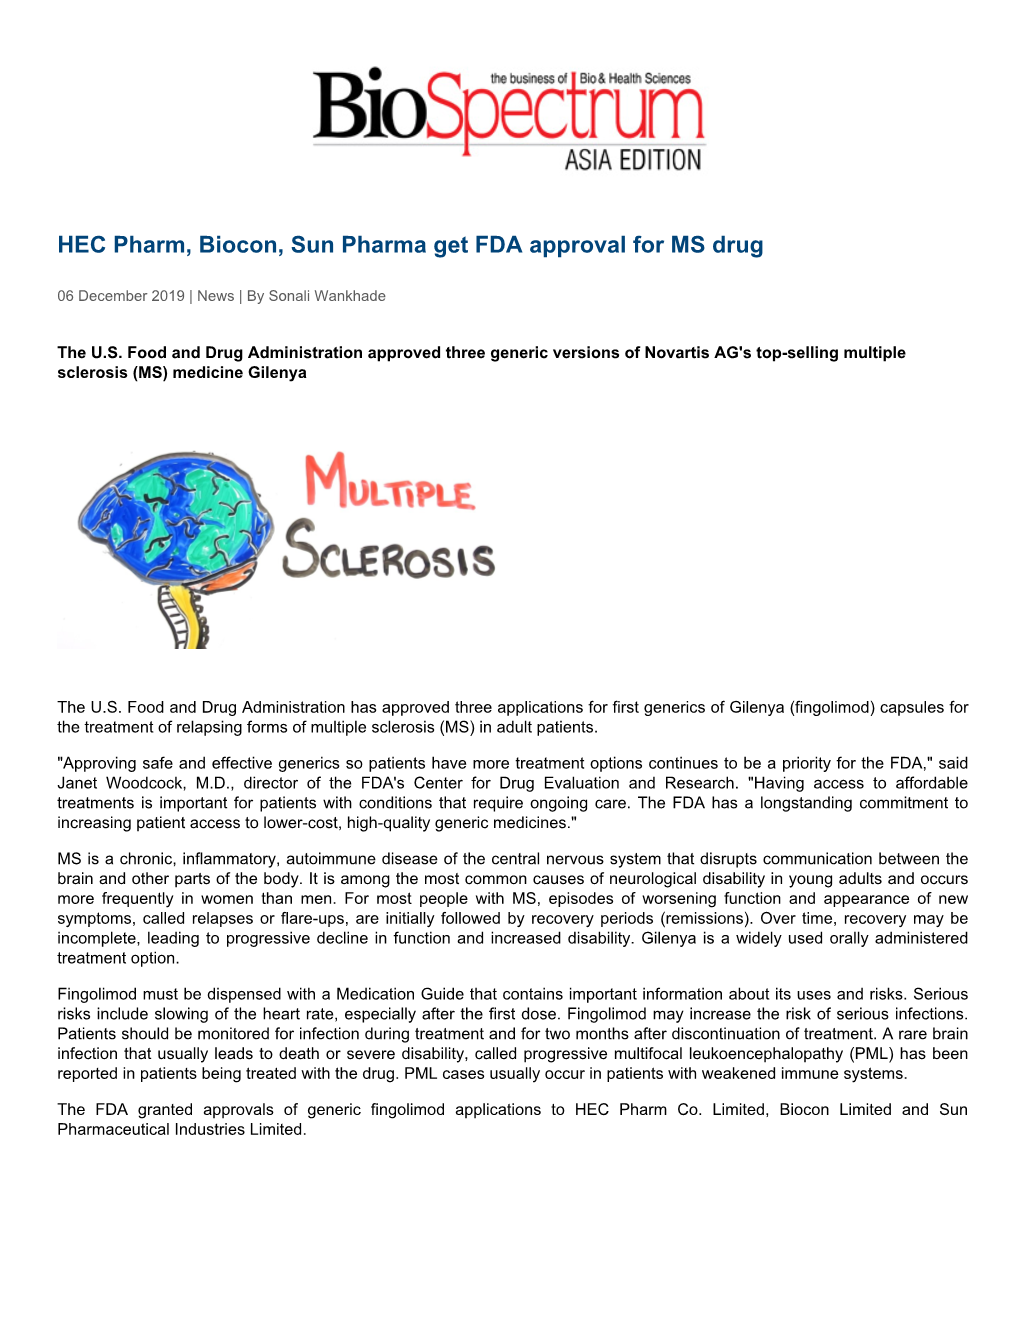 HEC Pharm, Biocon, Sun Pharma Get FDA Approval for MS Drug